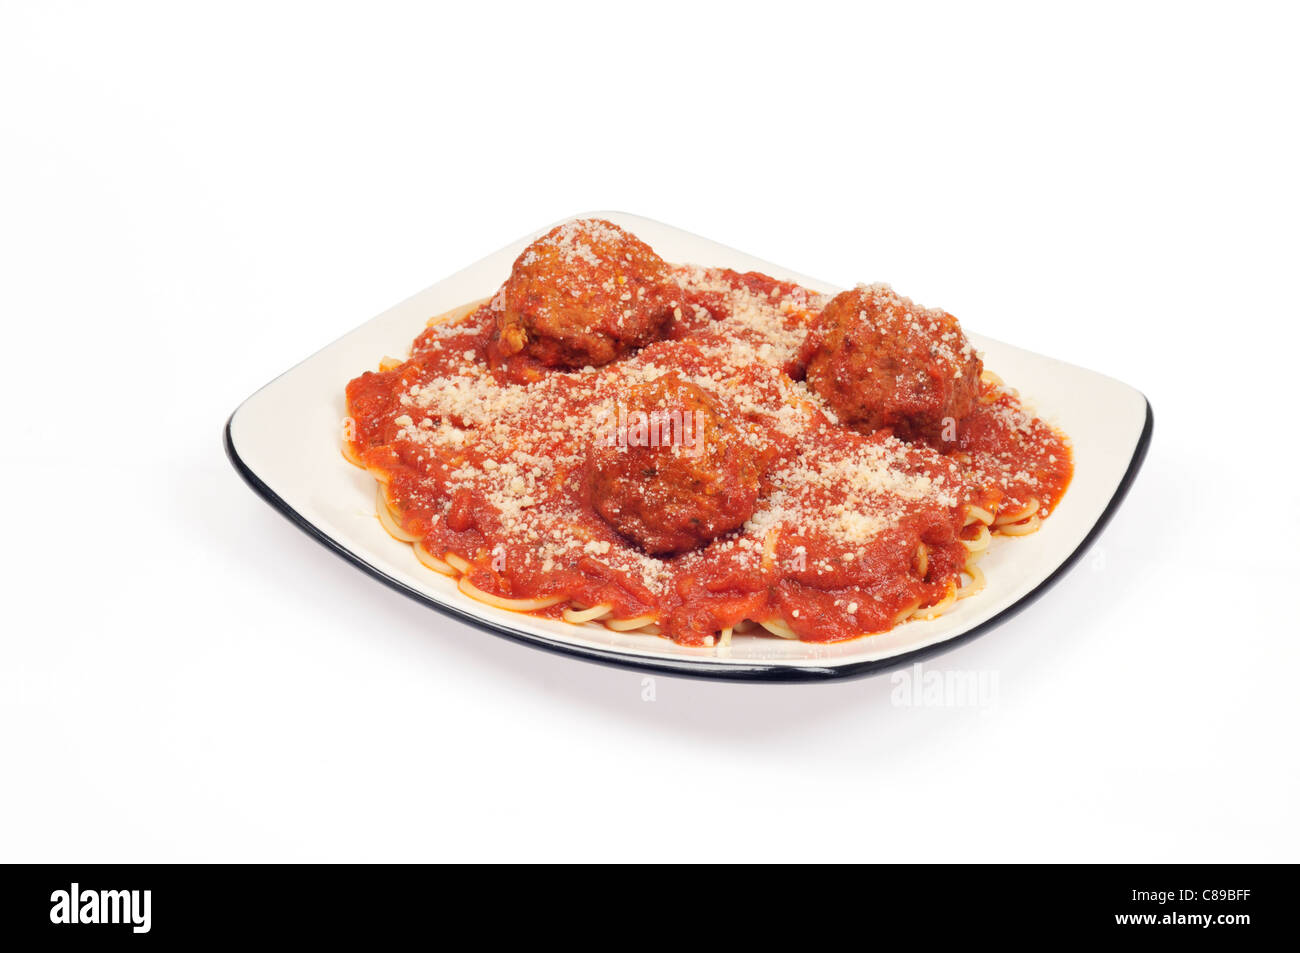 Piatto di spaghetti e polpette di carne con salsa di pomodoro e formaggio parmigiano grattugiato su sfondo bianco intaglio Foto Stock